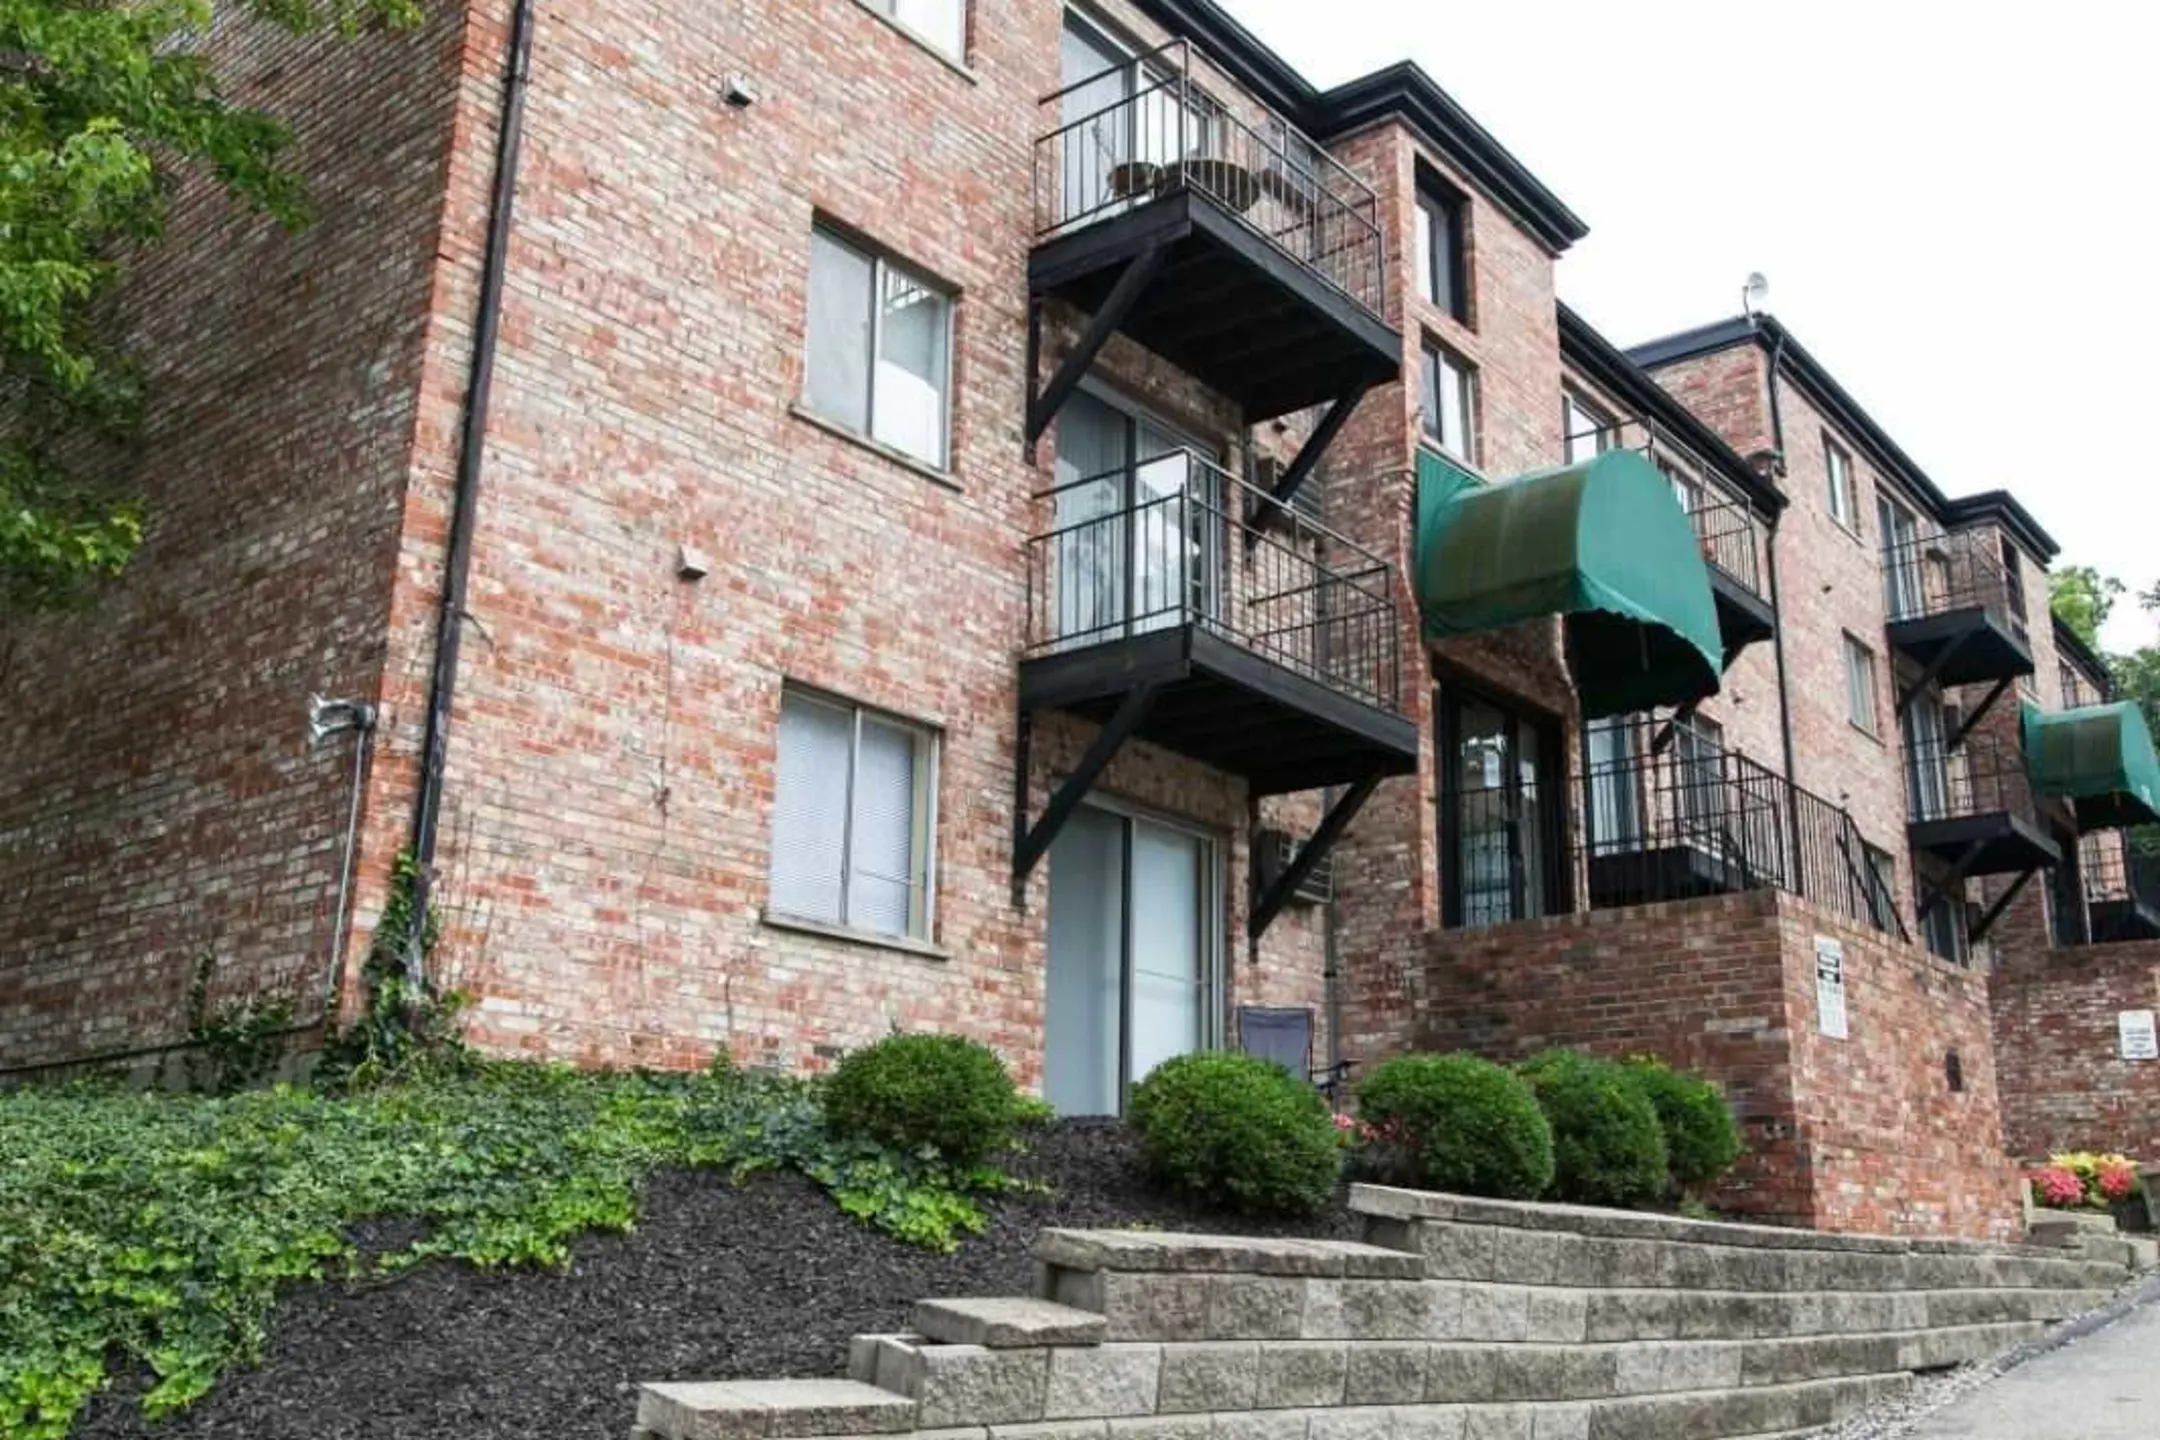 Building - The Cliffs Apartments & Dixmyth Hills - Cincinnati, OH